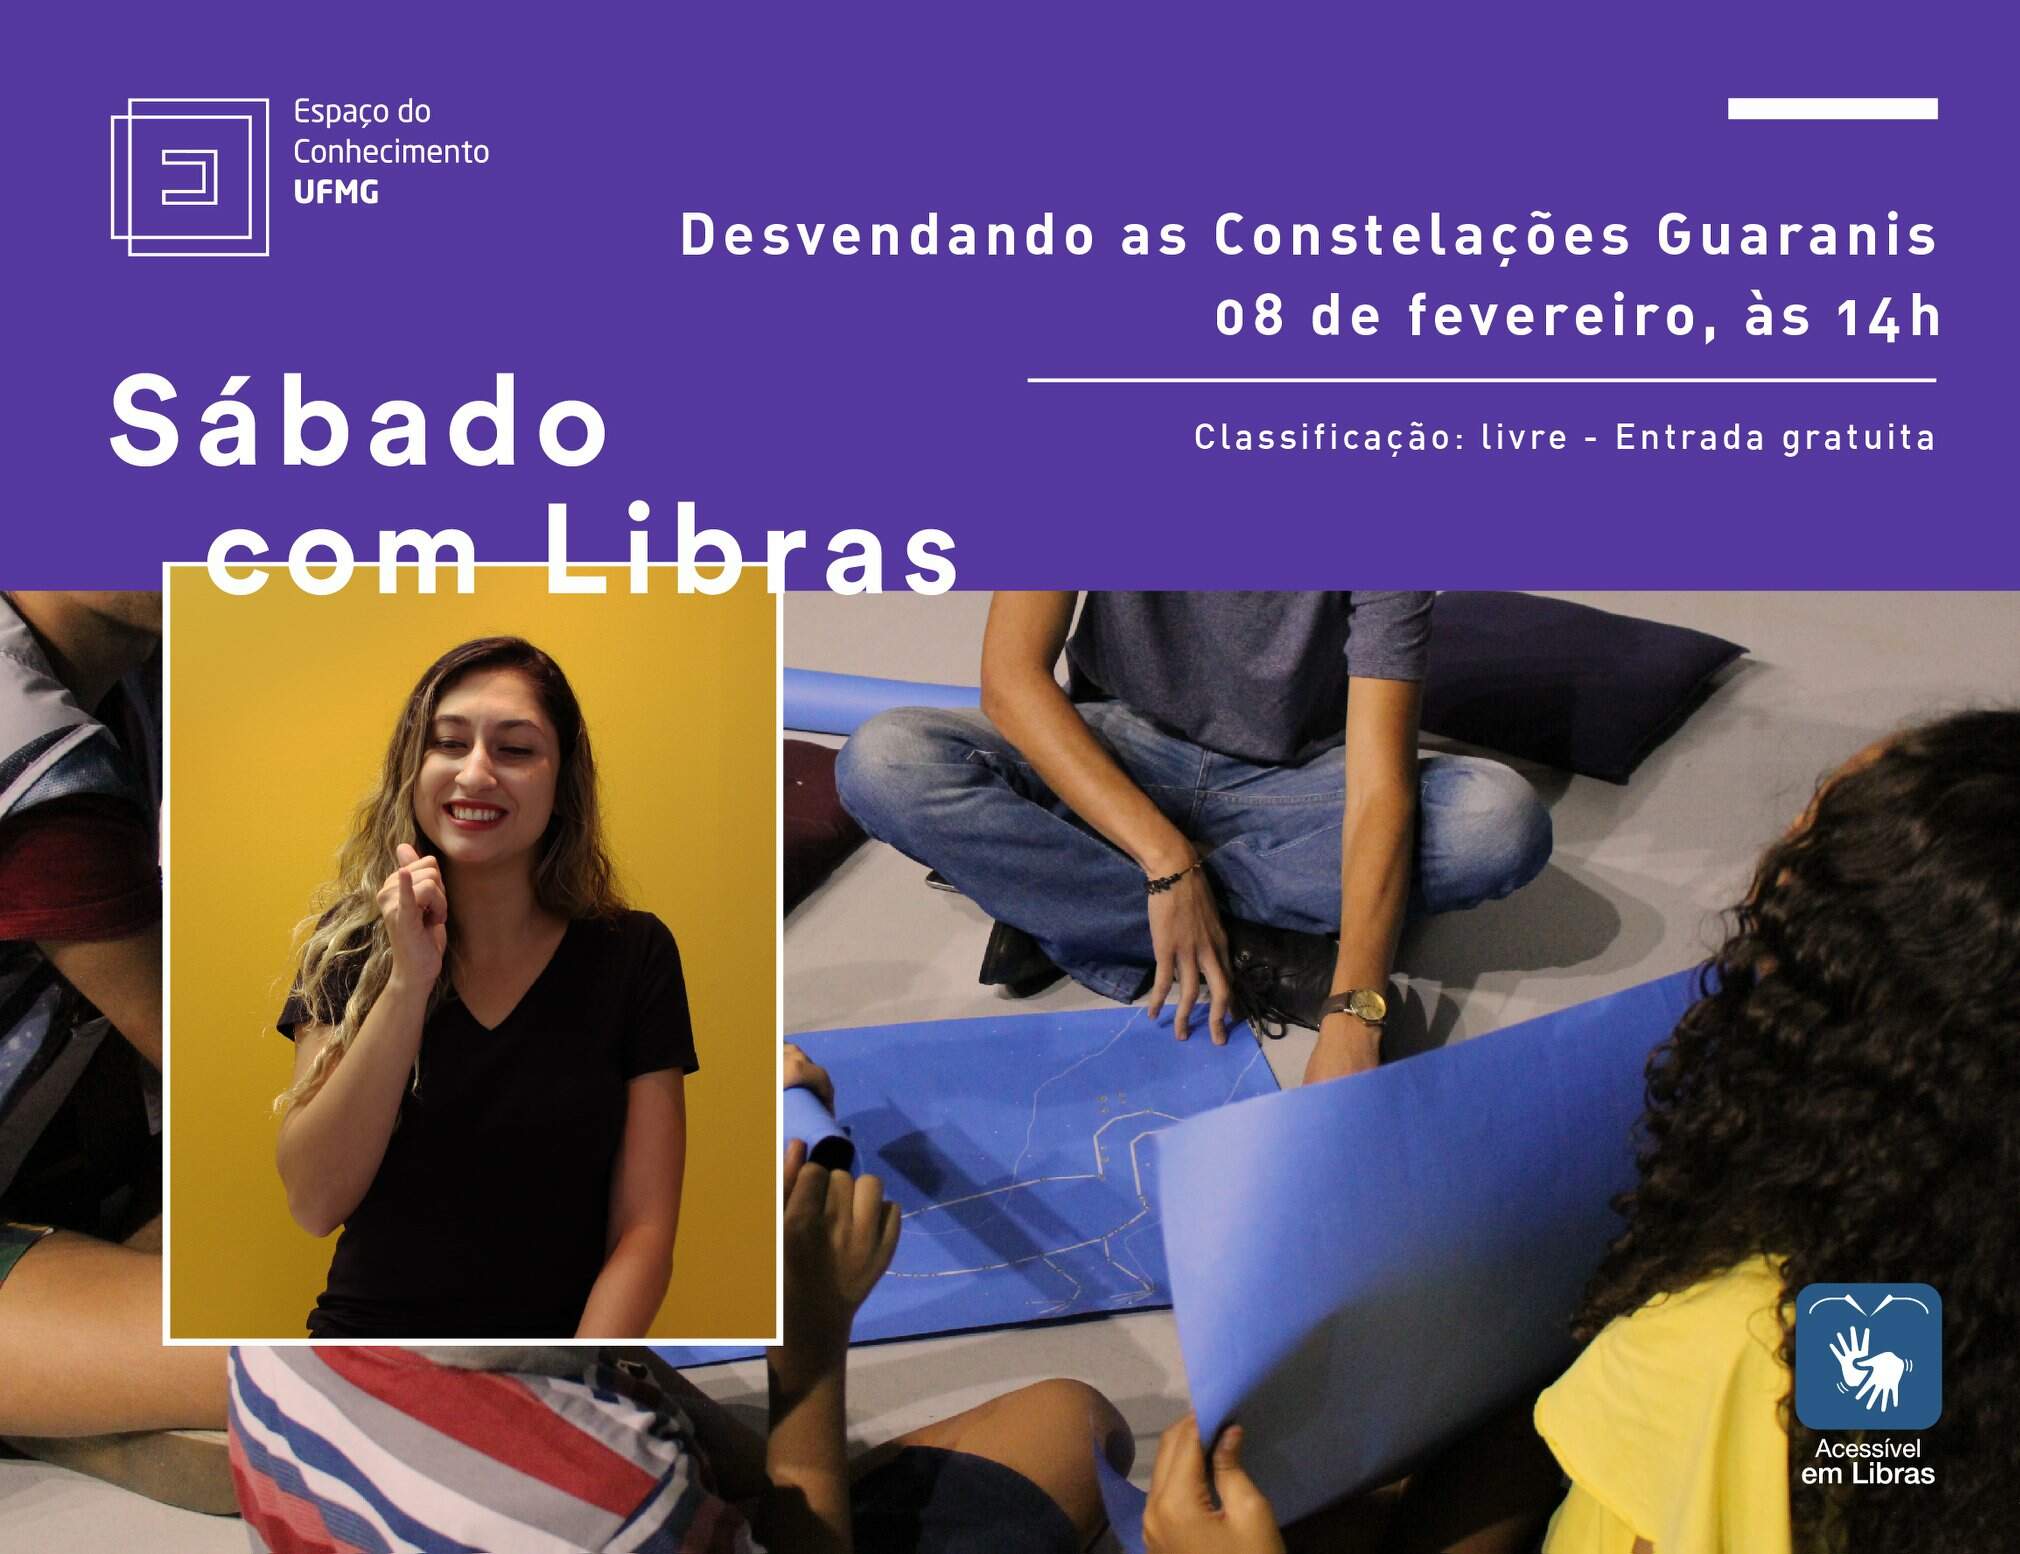 Sábado com Libras: Desvendando as Constelações Guaranis - Espaço do Conhecimento UFMG